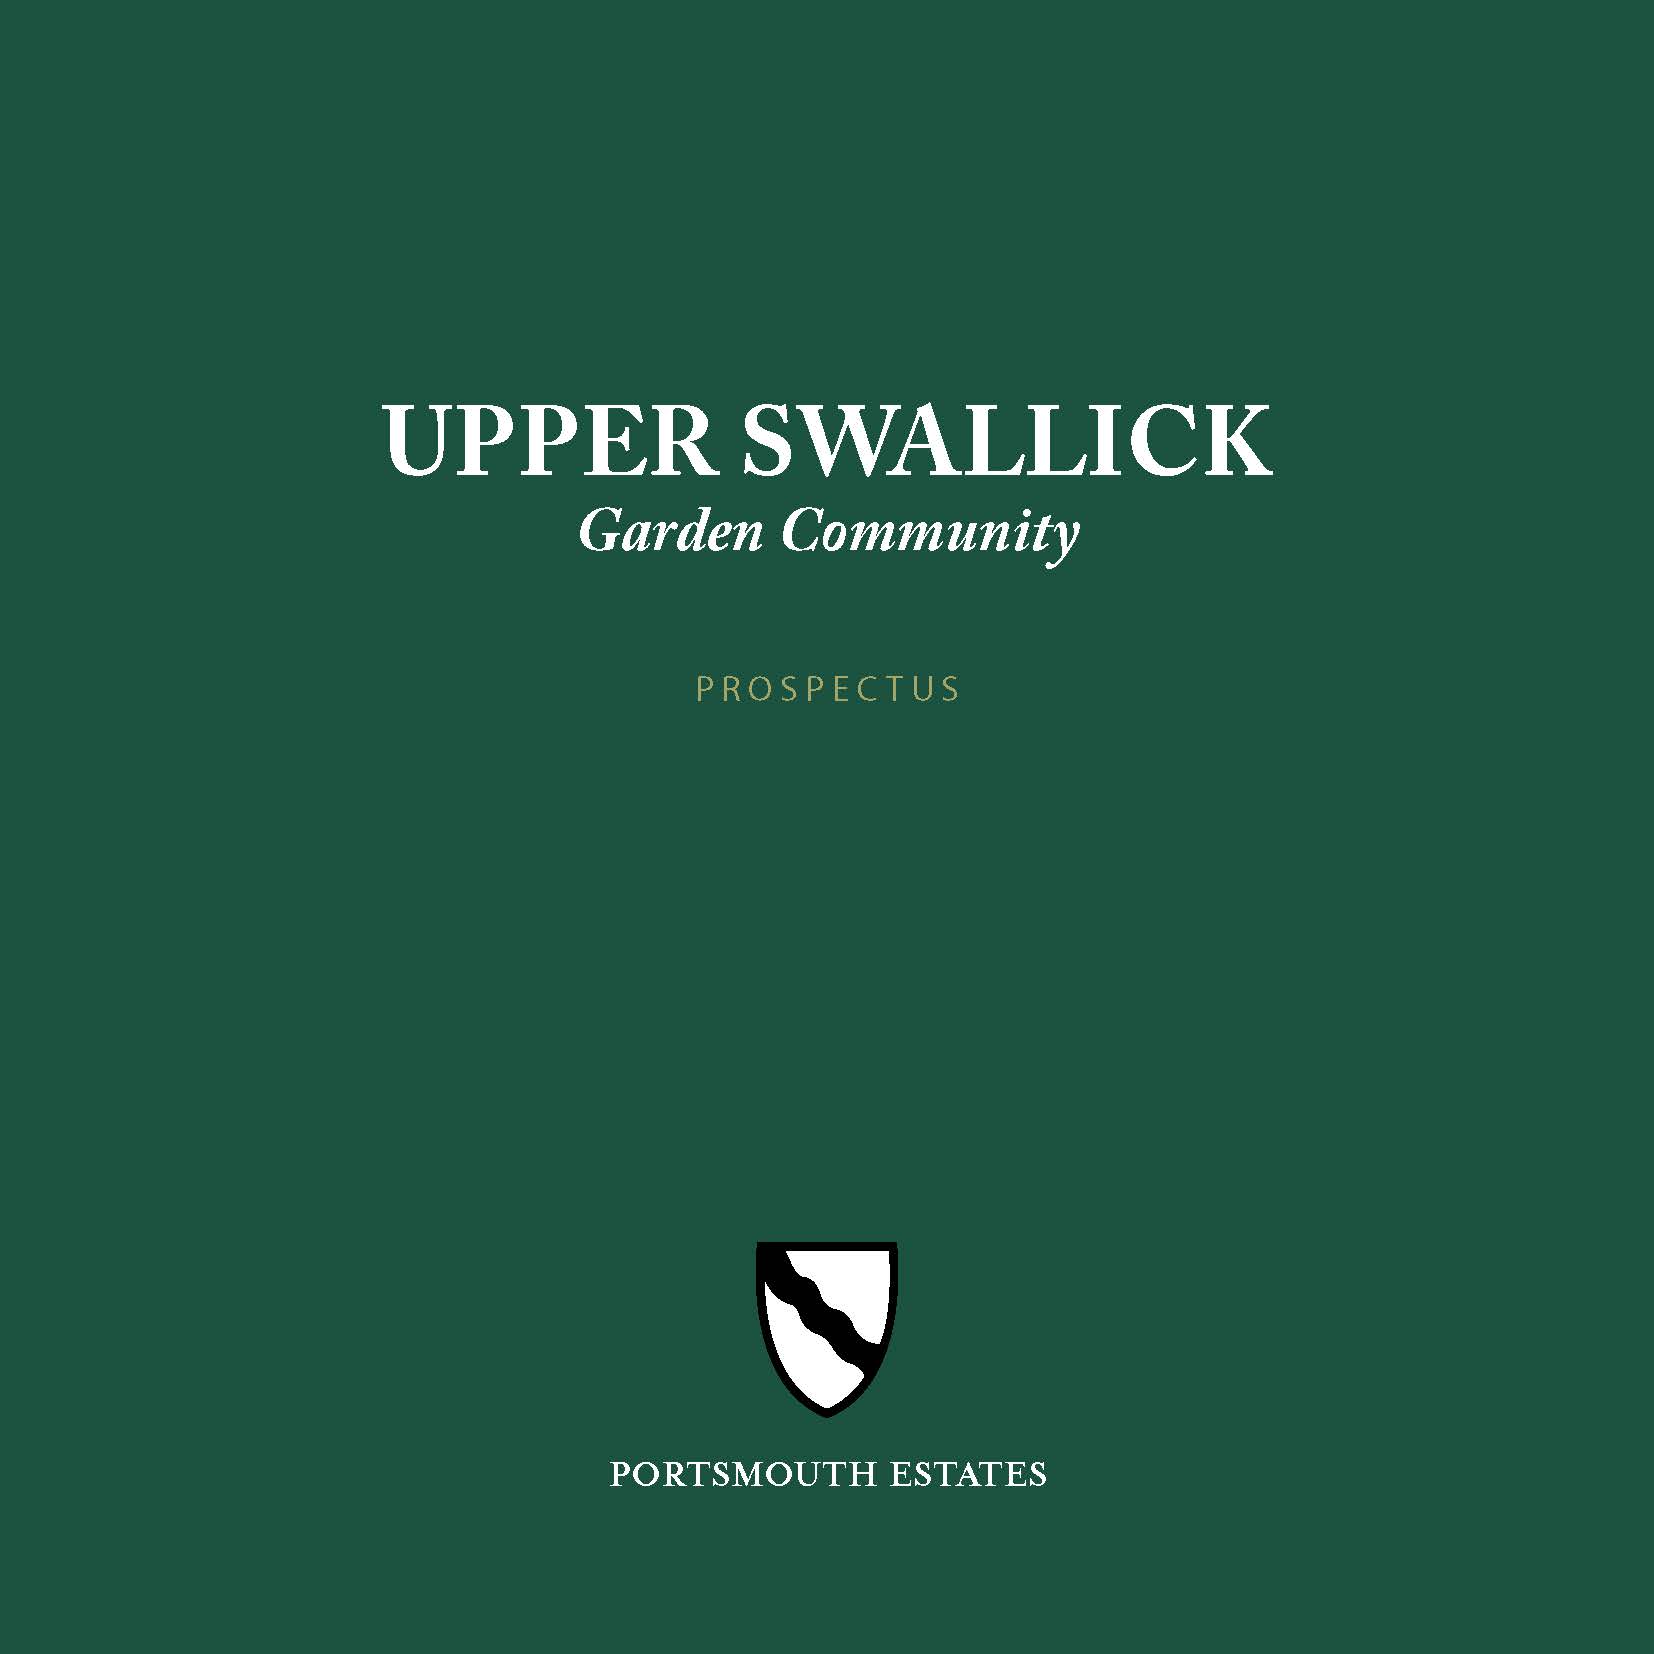 Upper Swallick Garden Community Prospectus